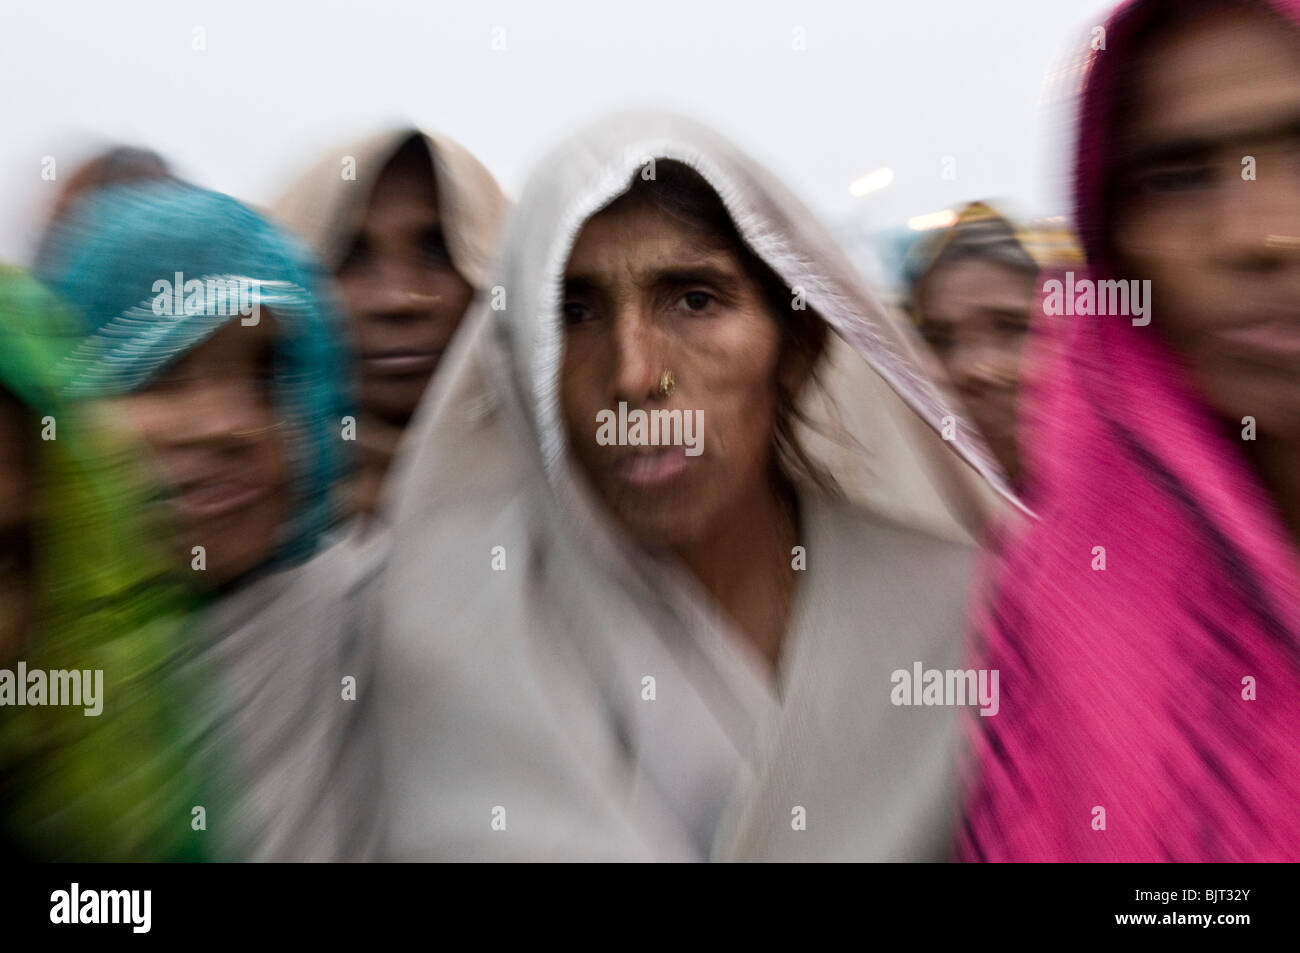 Les pèlerins sur l'île de Gangasagar. floue - Effet spécial shot. Banque D'Images